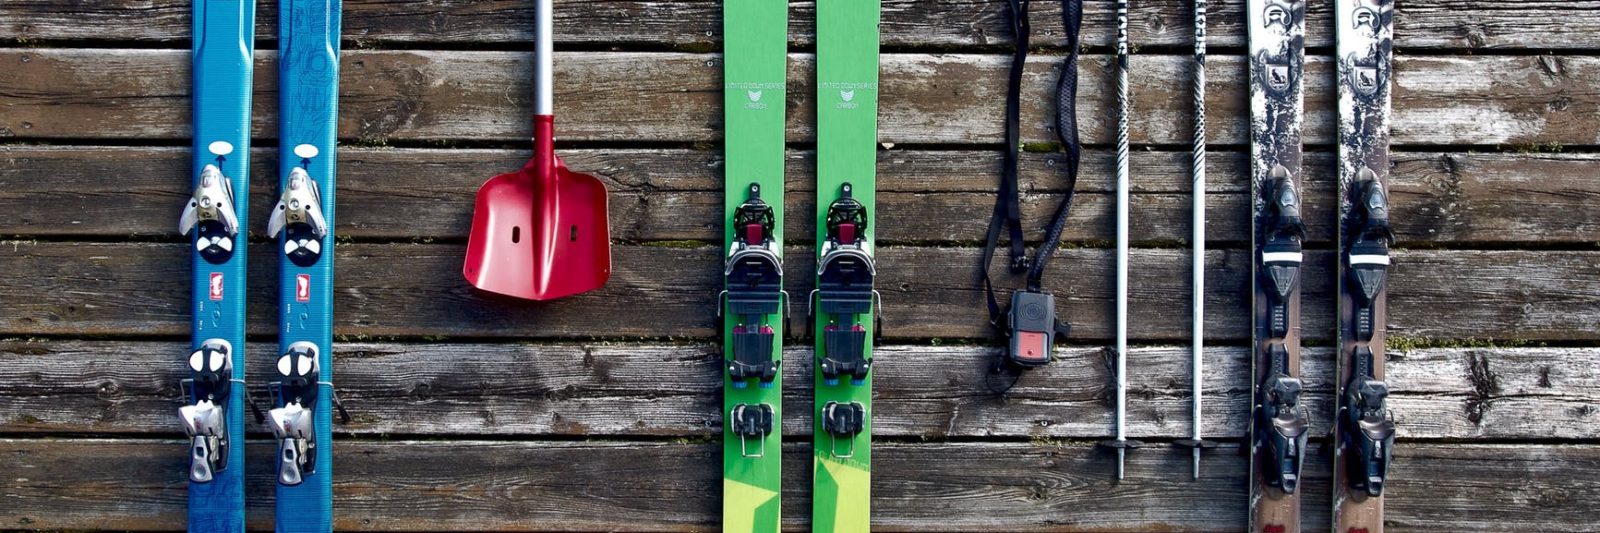 Thrifty Ski Rental